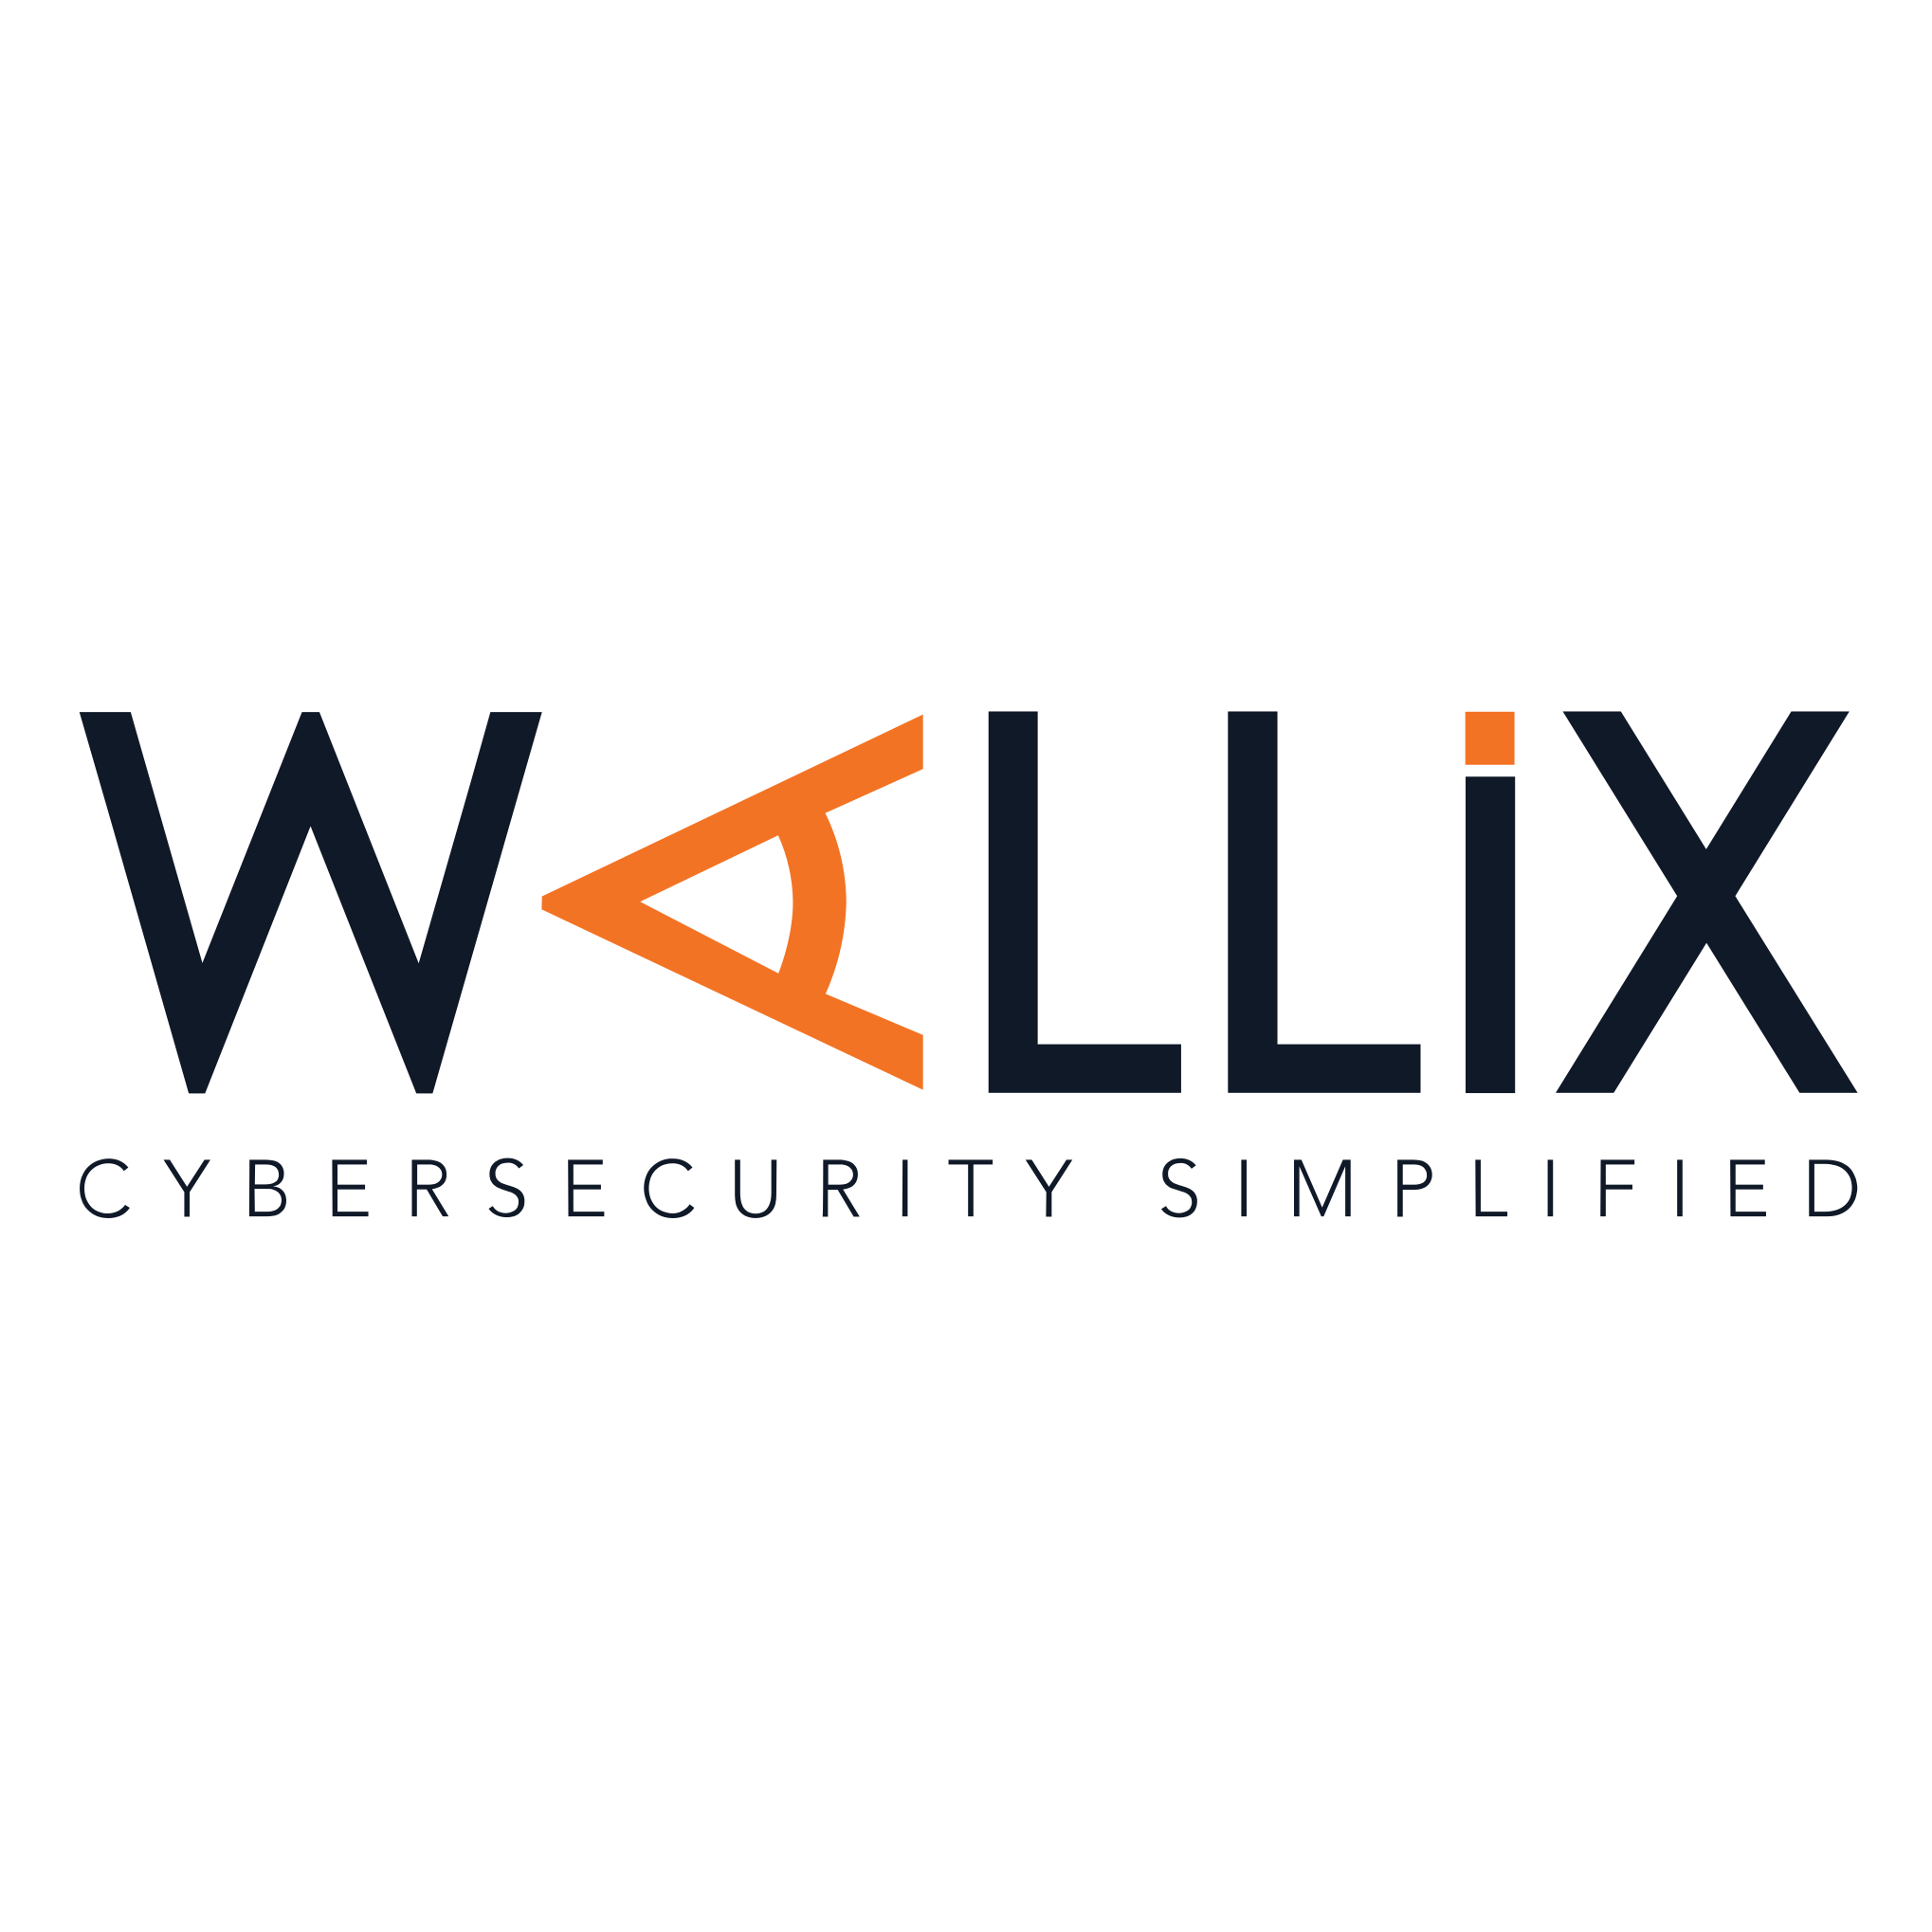 wallix-logo